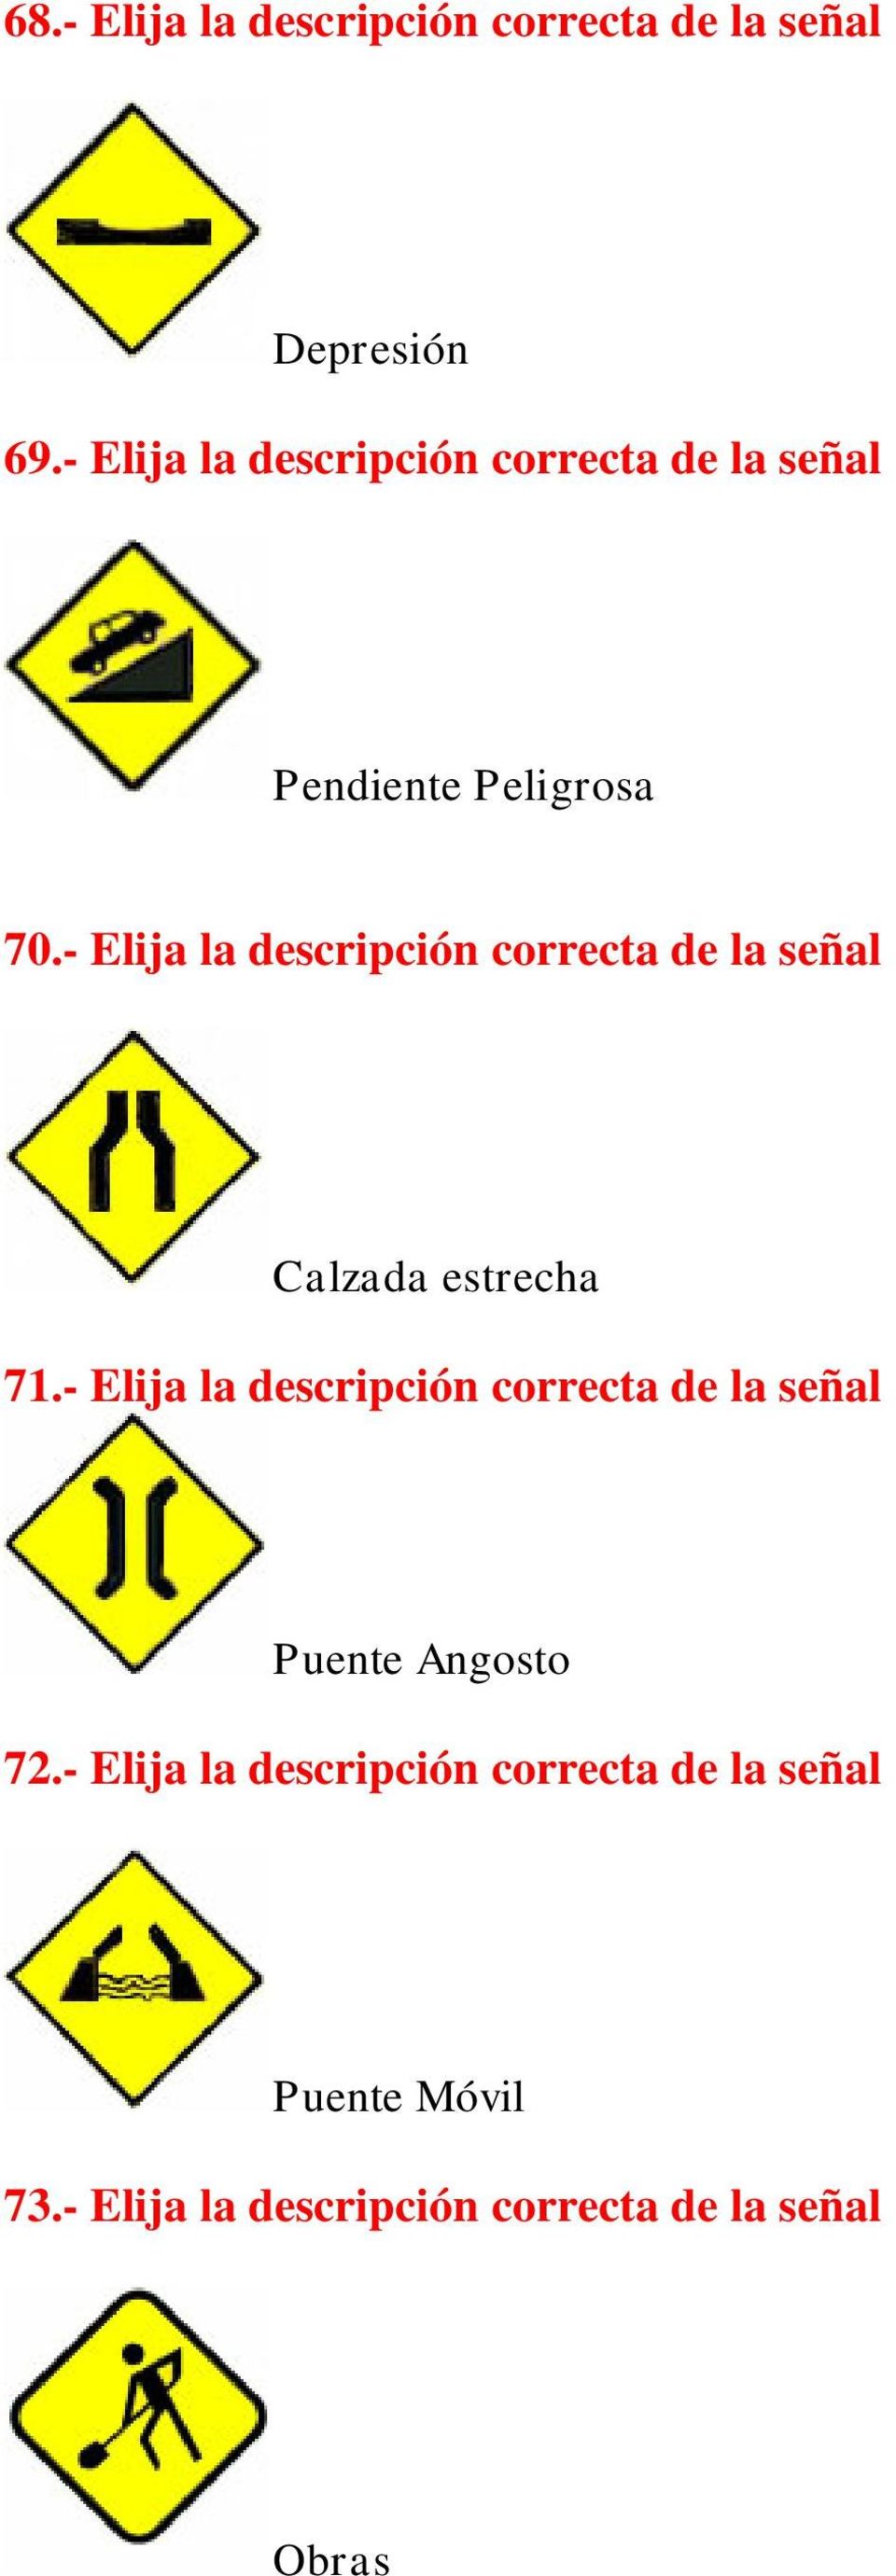 - Elija la descripción correcta de la señal Calzada estrecha 71.